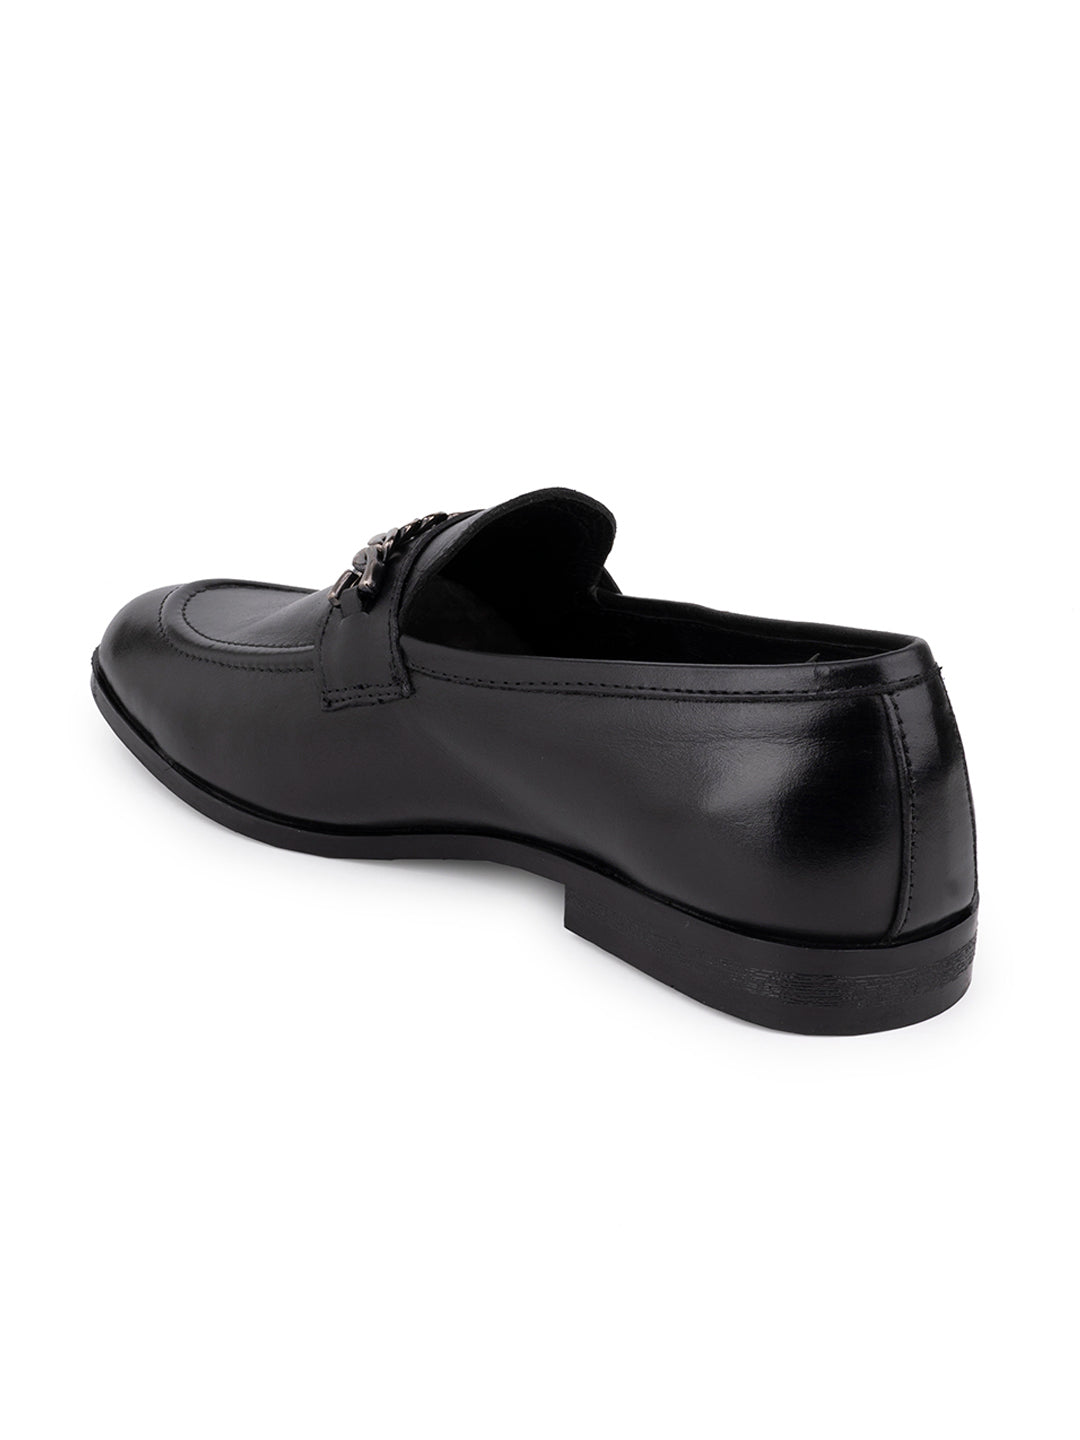 Footwear, Men Footwear, BLACK, Loafers